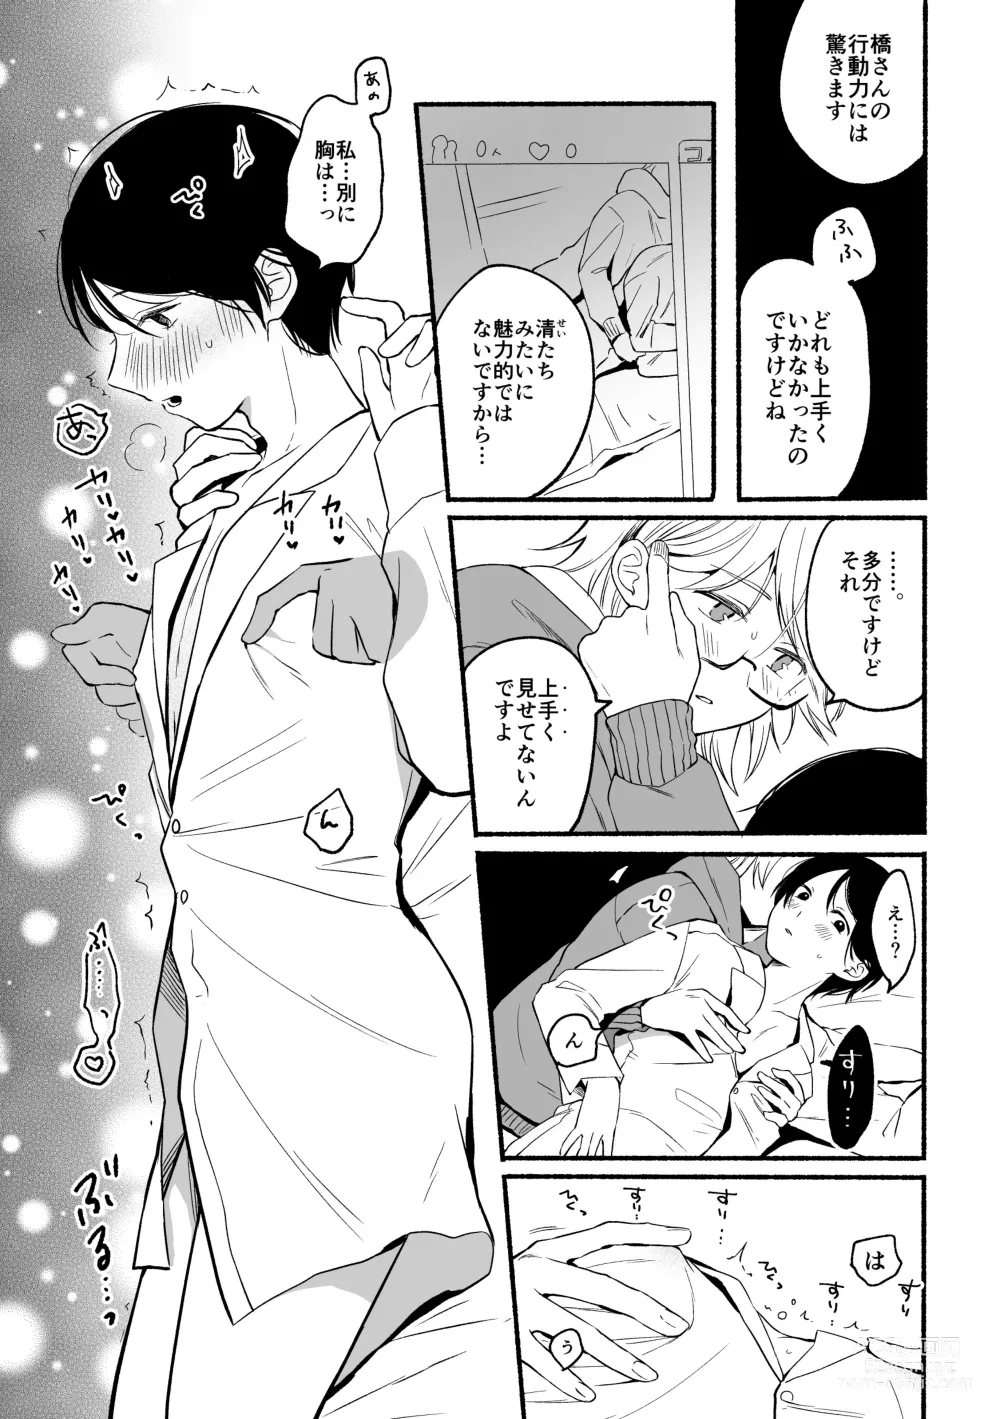 Page 7 of doujinshi Seijinkou Mangakka, Hamedori Haishin Ganbarimasu.